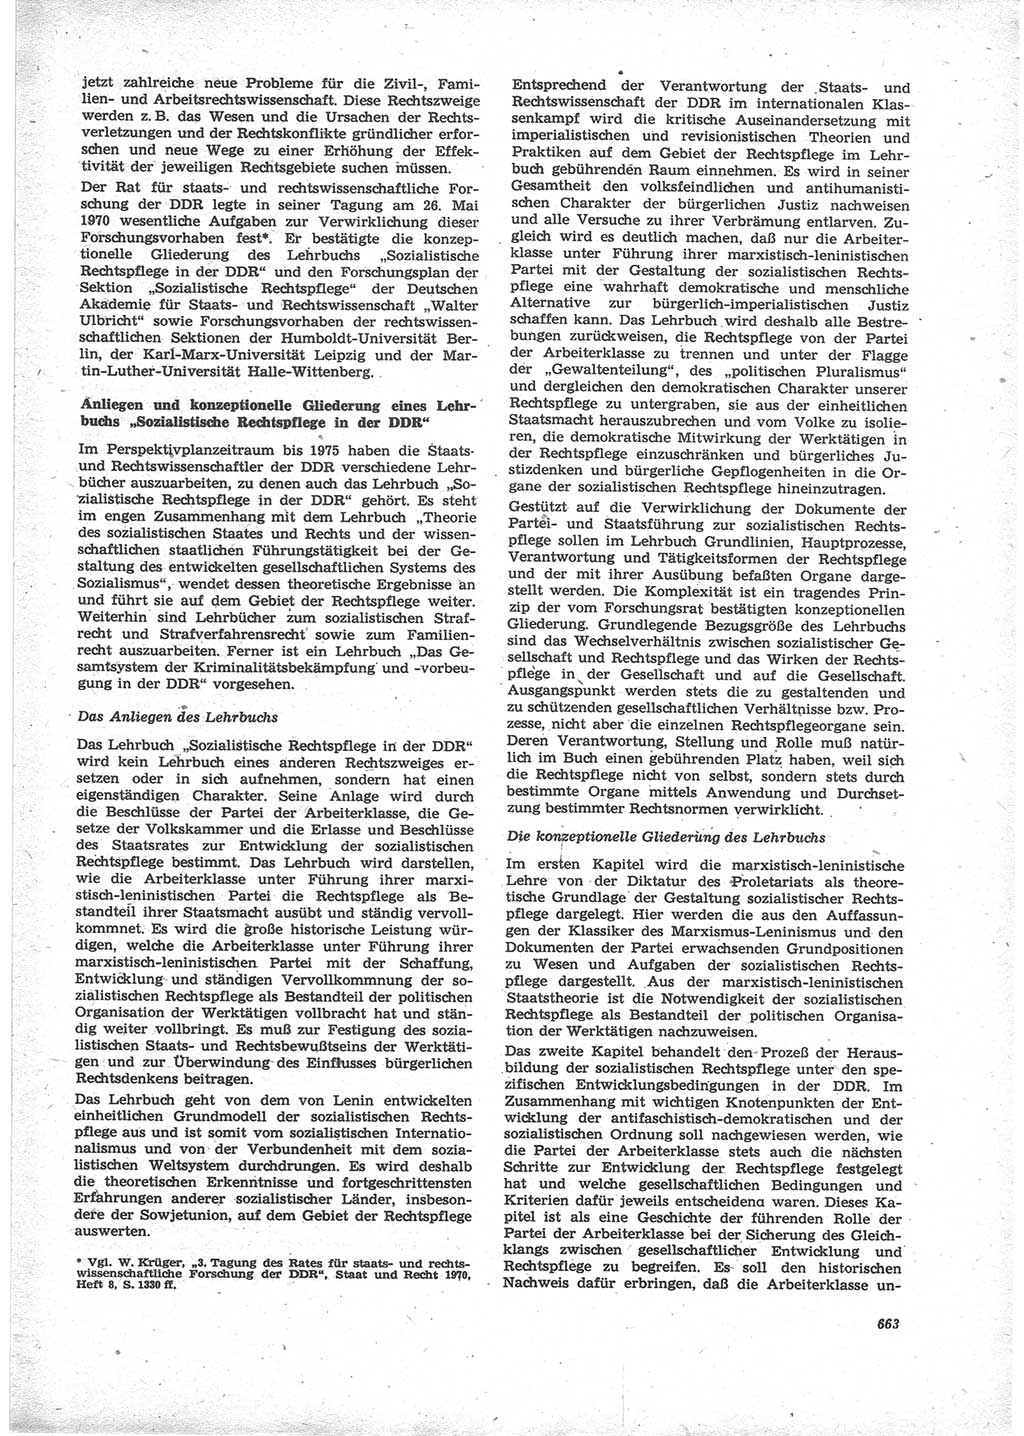 Neue Justiz (NJ), Zeitschrift für Recht und Rechtswissenschaft [Deutsche Demokratische Republik (DDR)], 24. Jahrgang 1970, Seite 663 (NJ DDR 1970, S. 663)